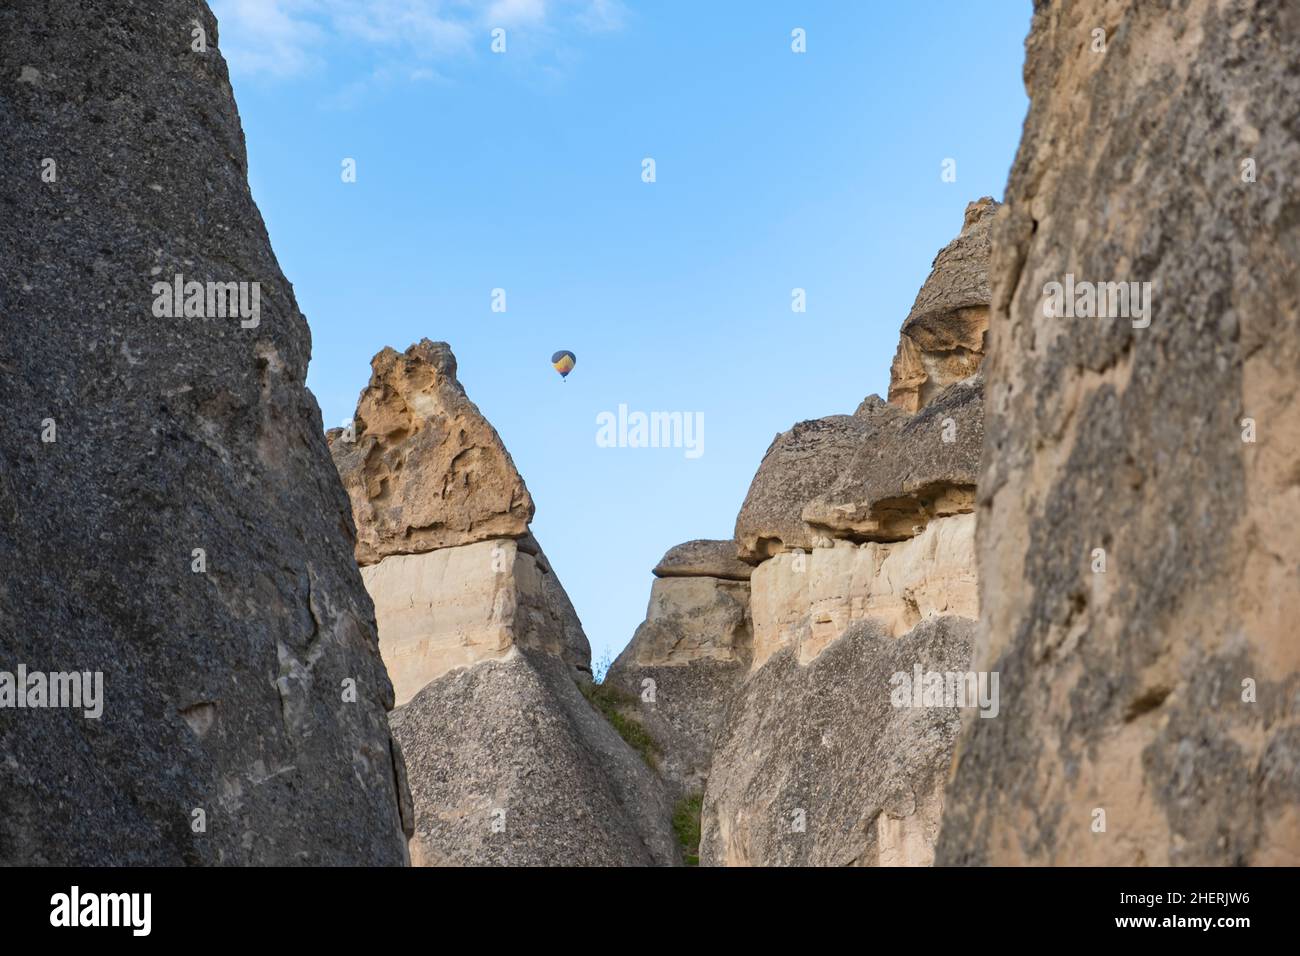 Volar globos aerostáticos y chimeneas de hadas en el Valle de Pasabag o el Valle de Monks, Museo al aire libre Zelve, Capadocia, Turquía. Foto de stock